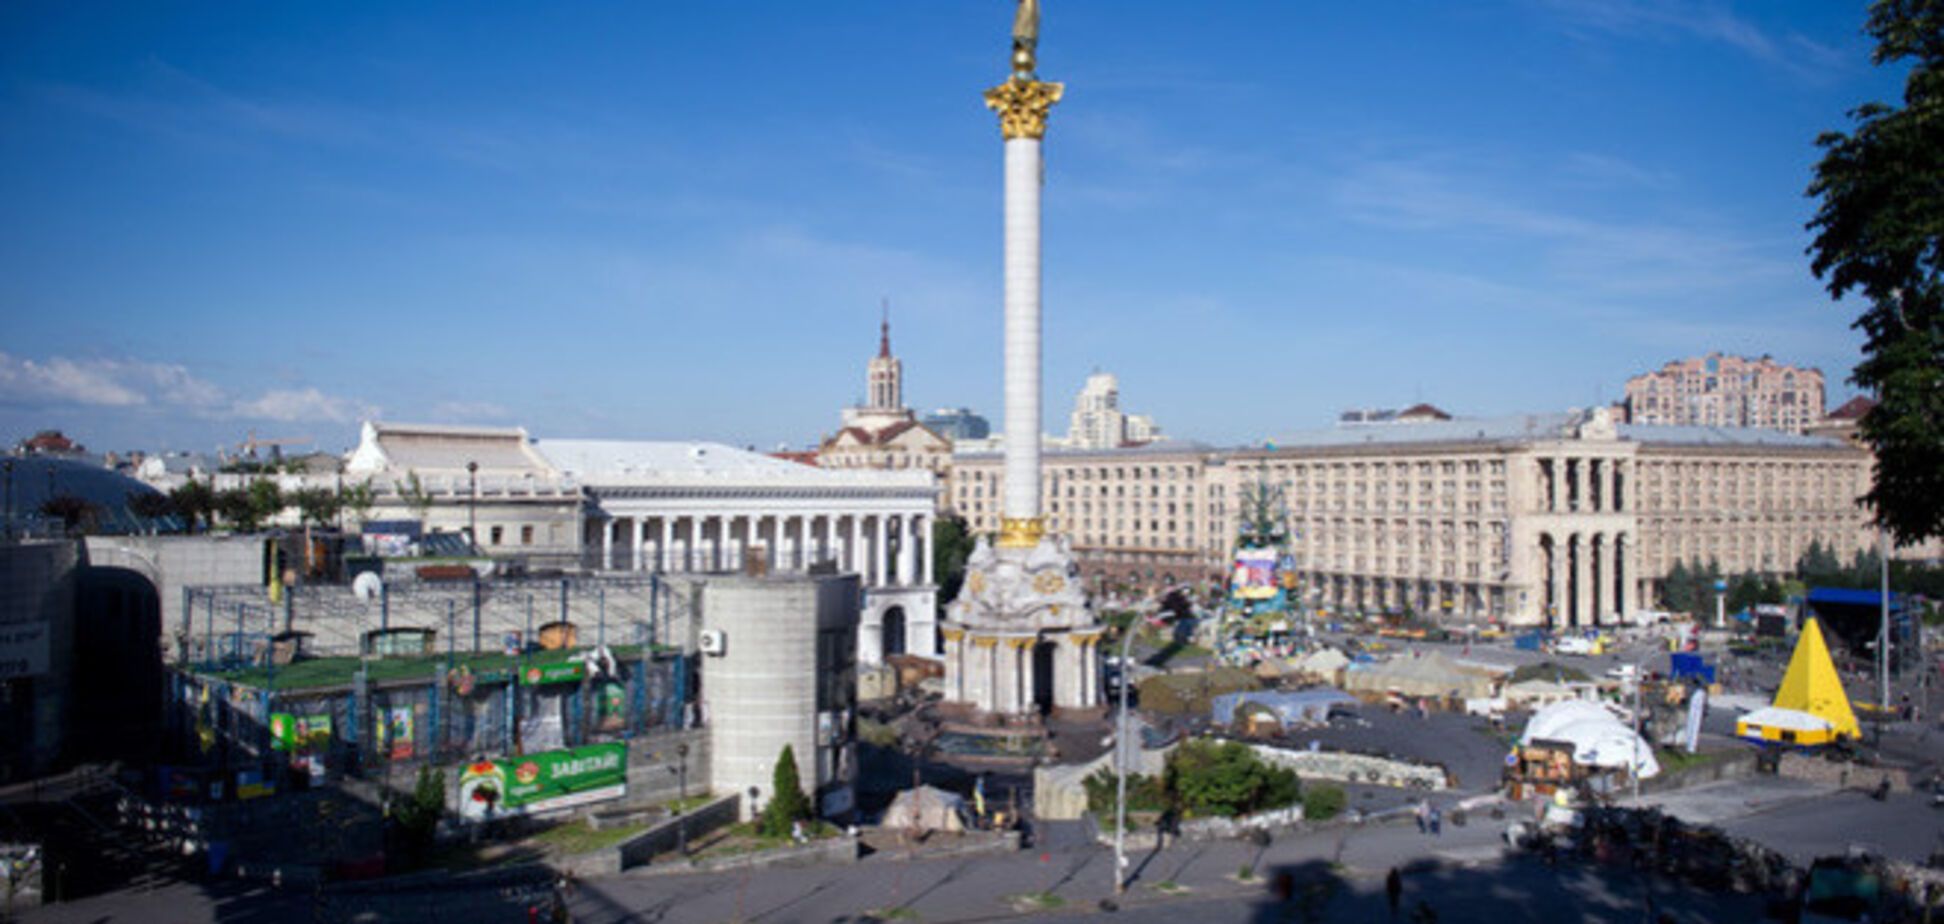 Порядок на Майдане в День достоинства обеспечит милиция и самооборона